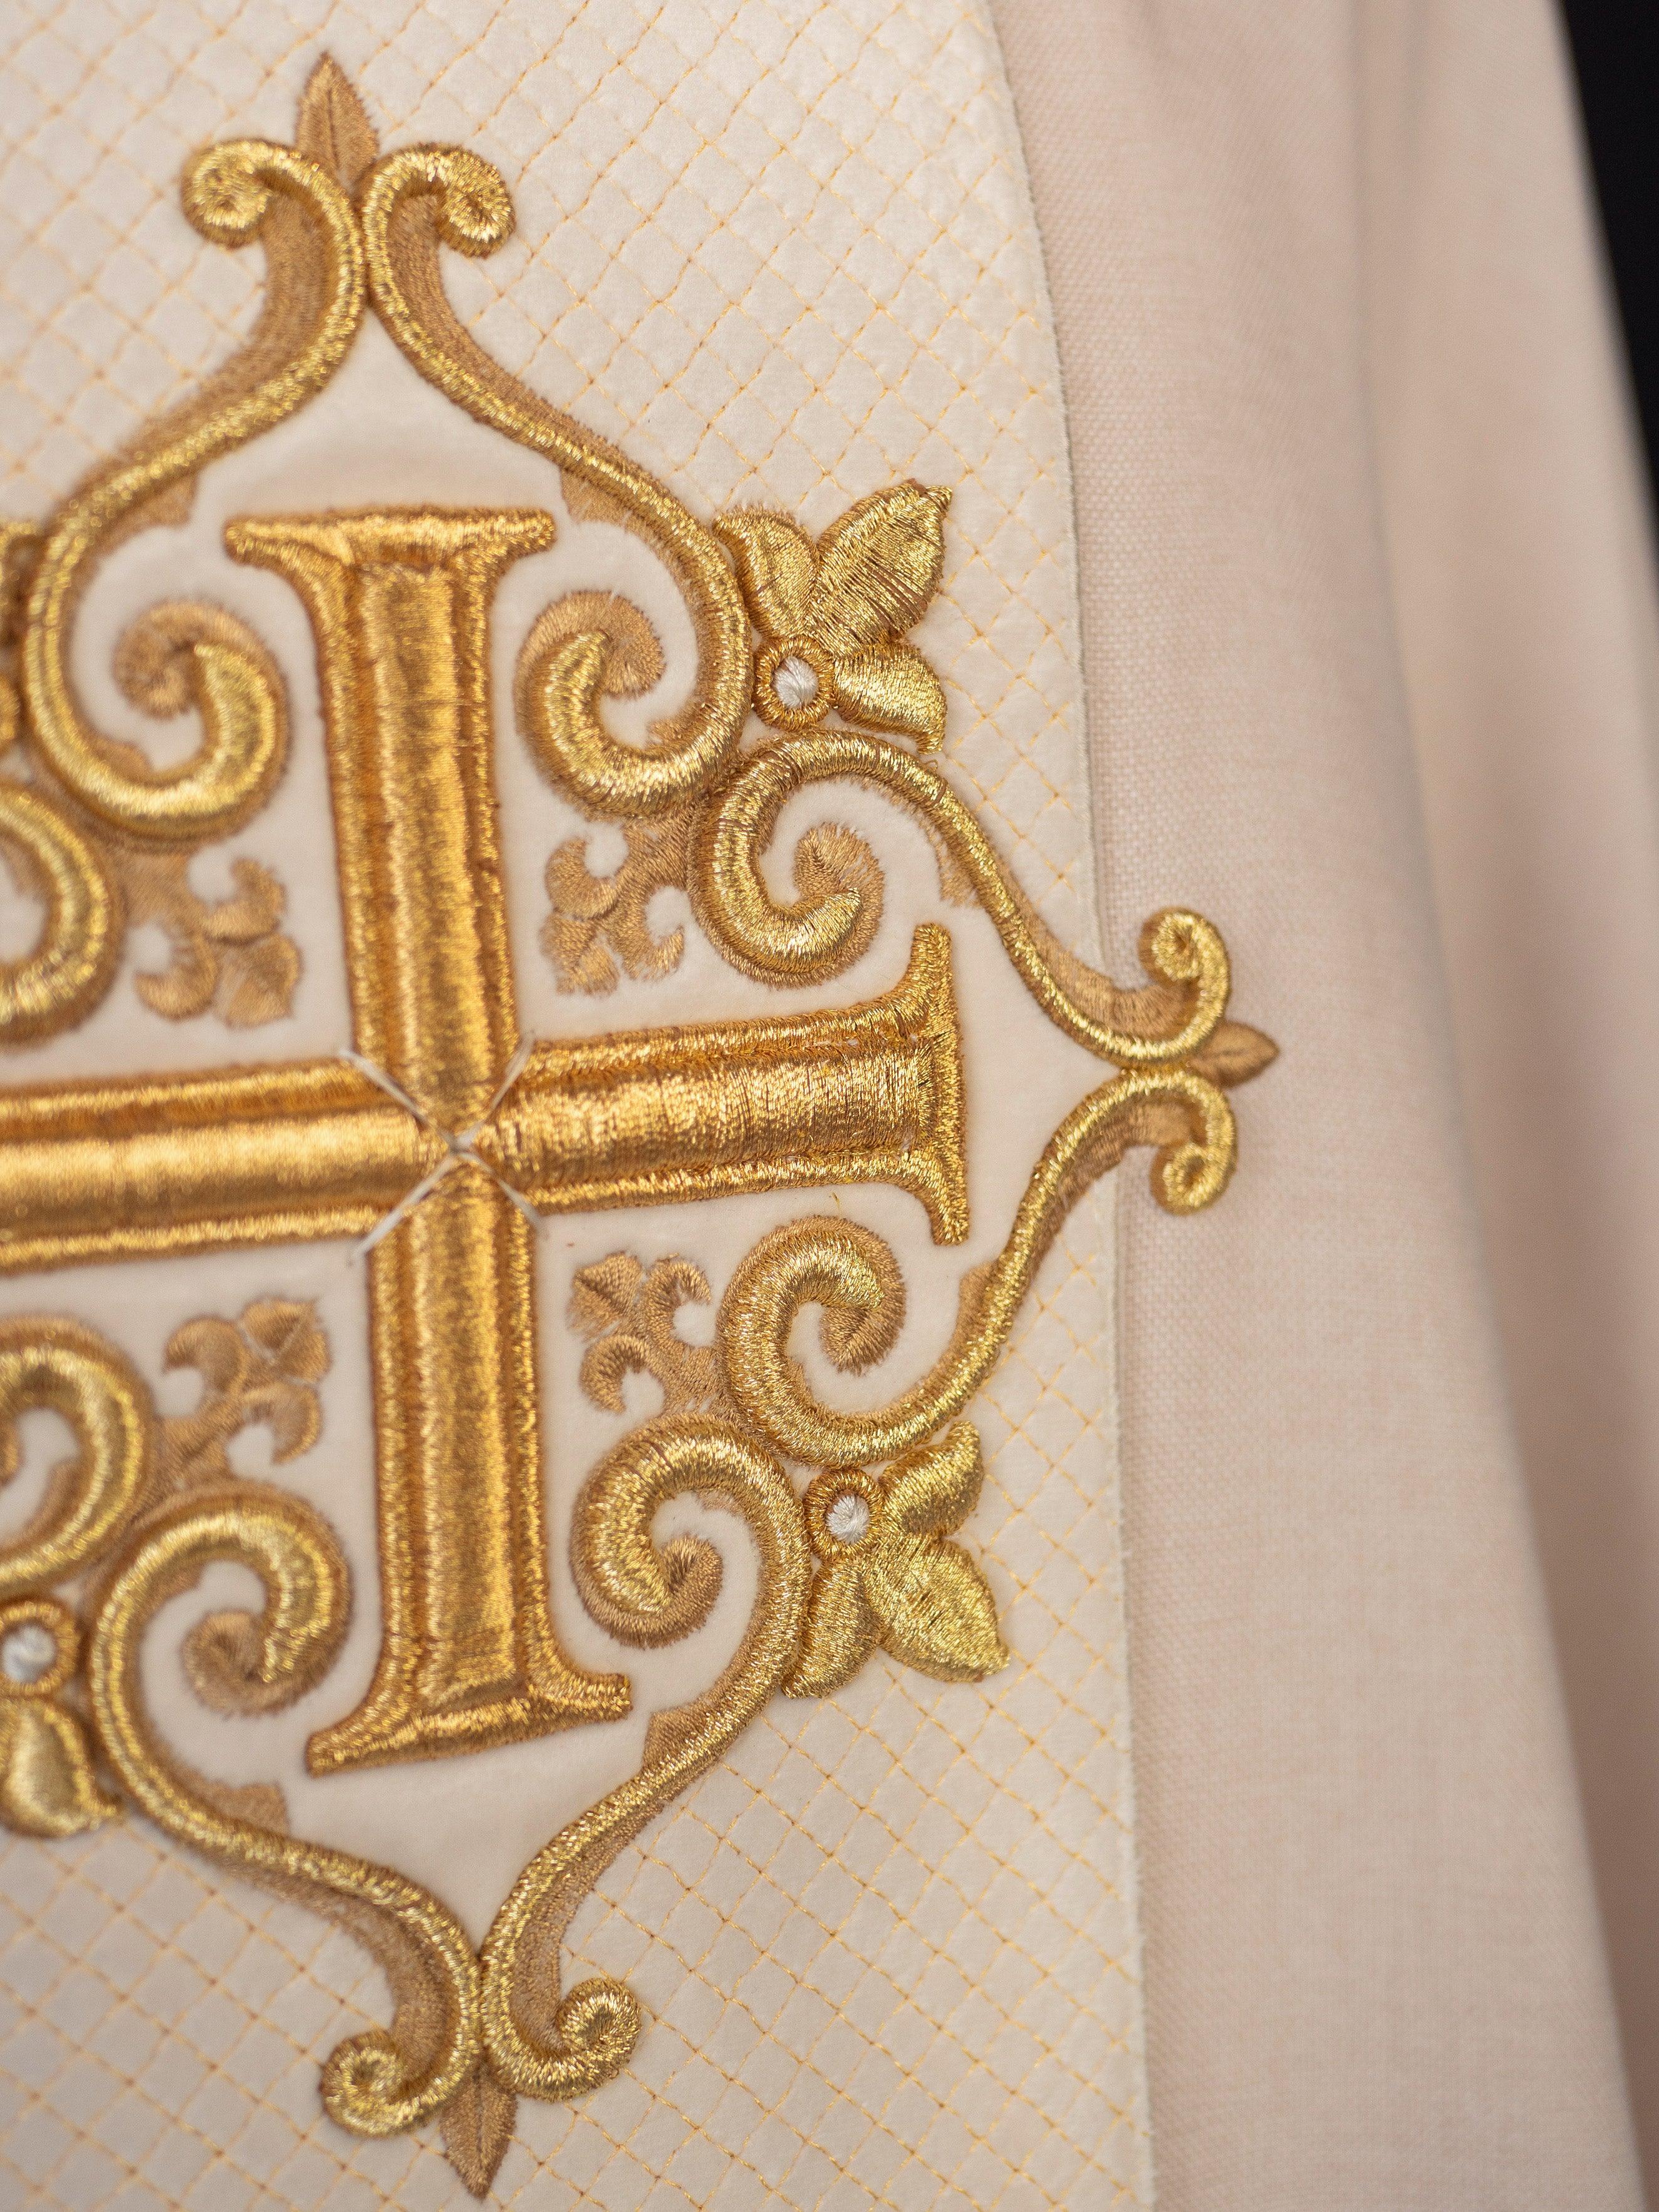 Ornat haftowany na aksamicie z symbolem Krzyż Ecru